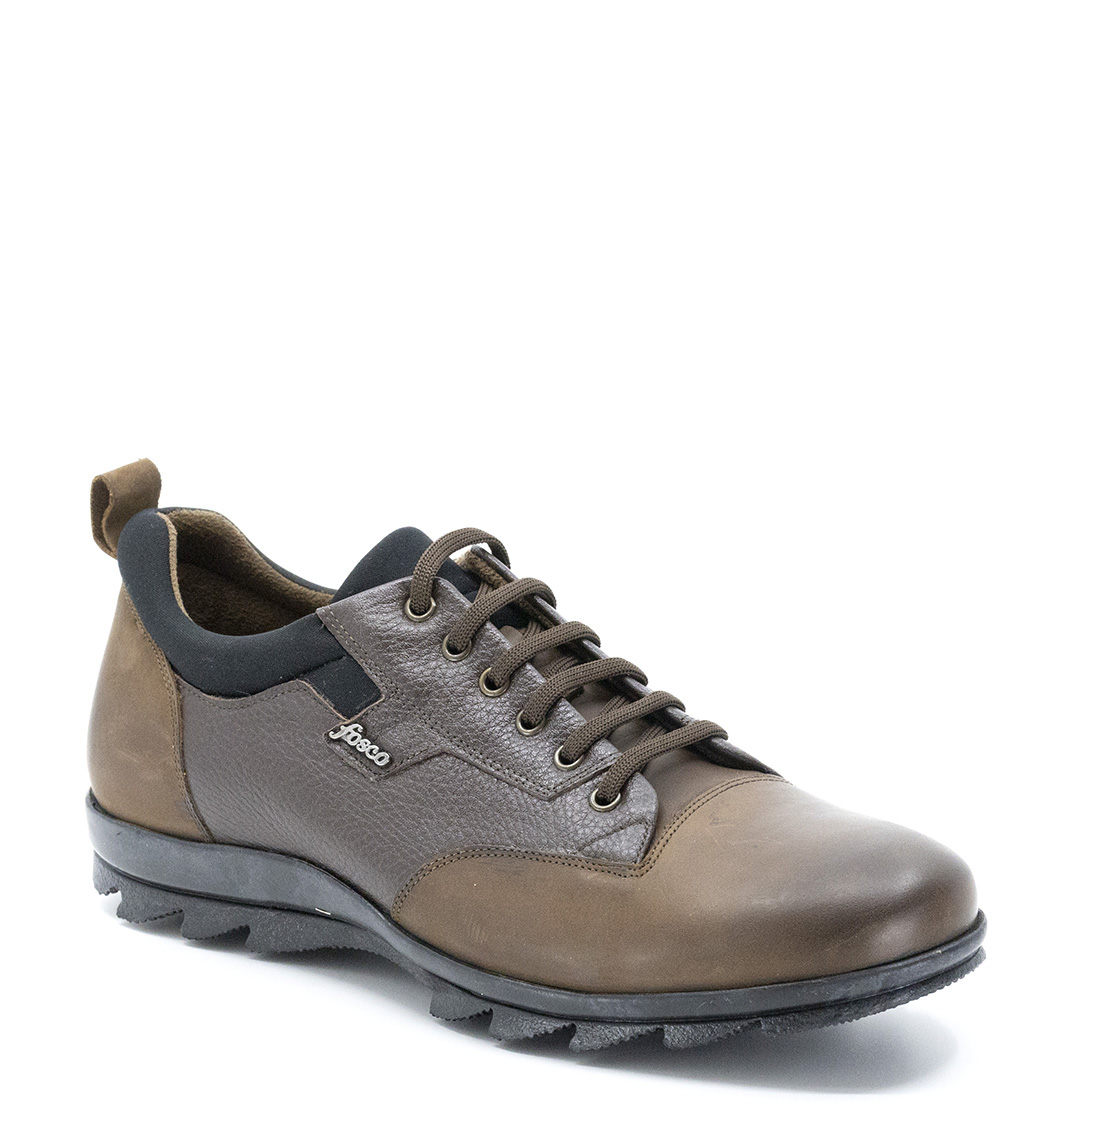 Bağcıklı Hakiki Deri Kauçuk Taban Sıcak Astar Kışlık Erkek Ayakkabı, Renk: Kahverengi, Beden: 45